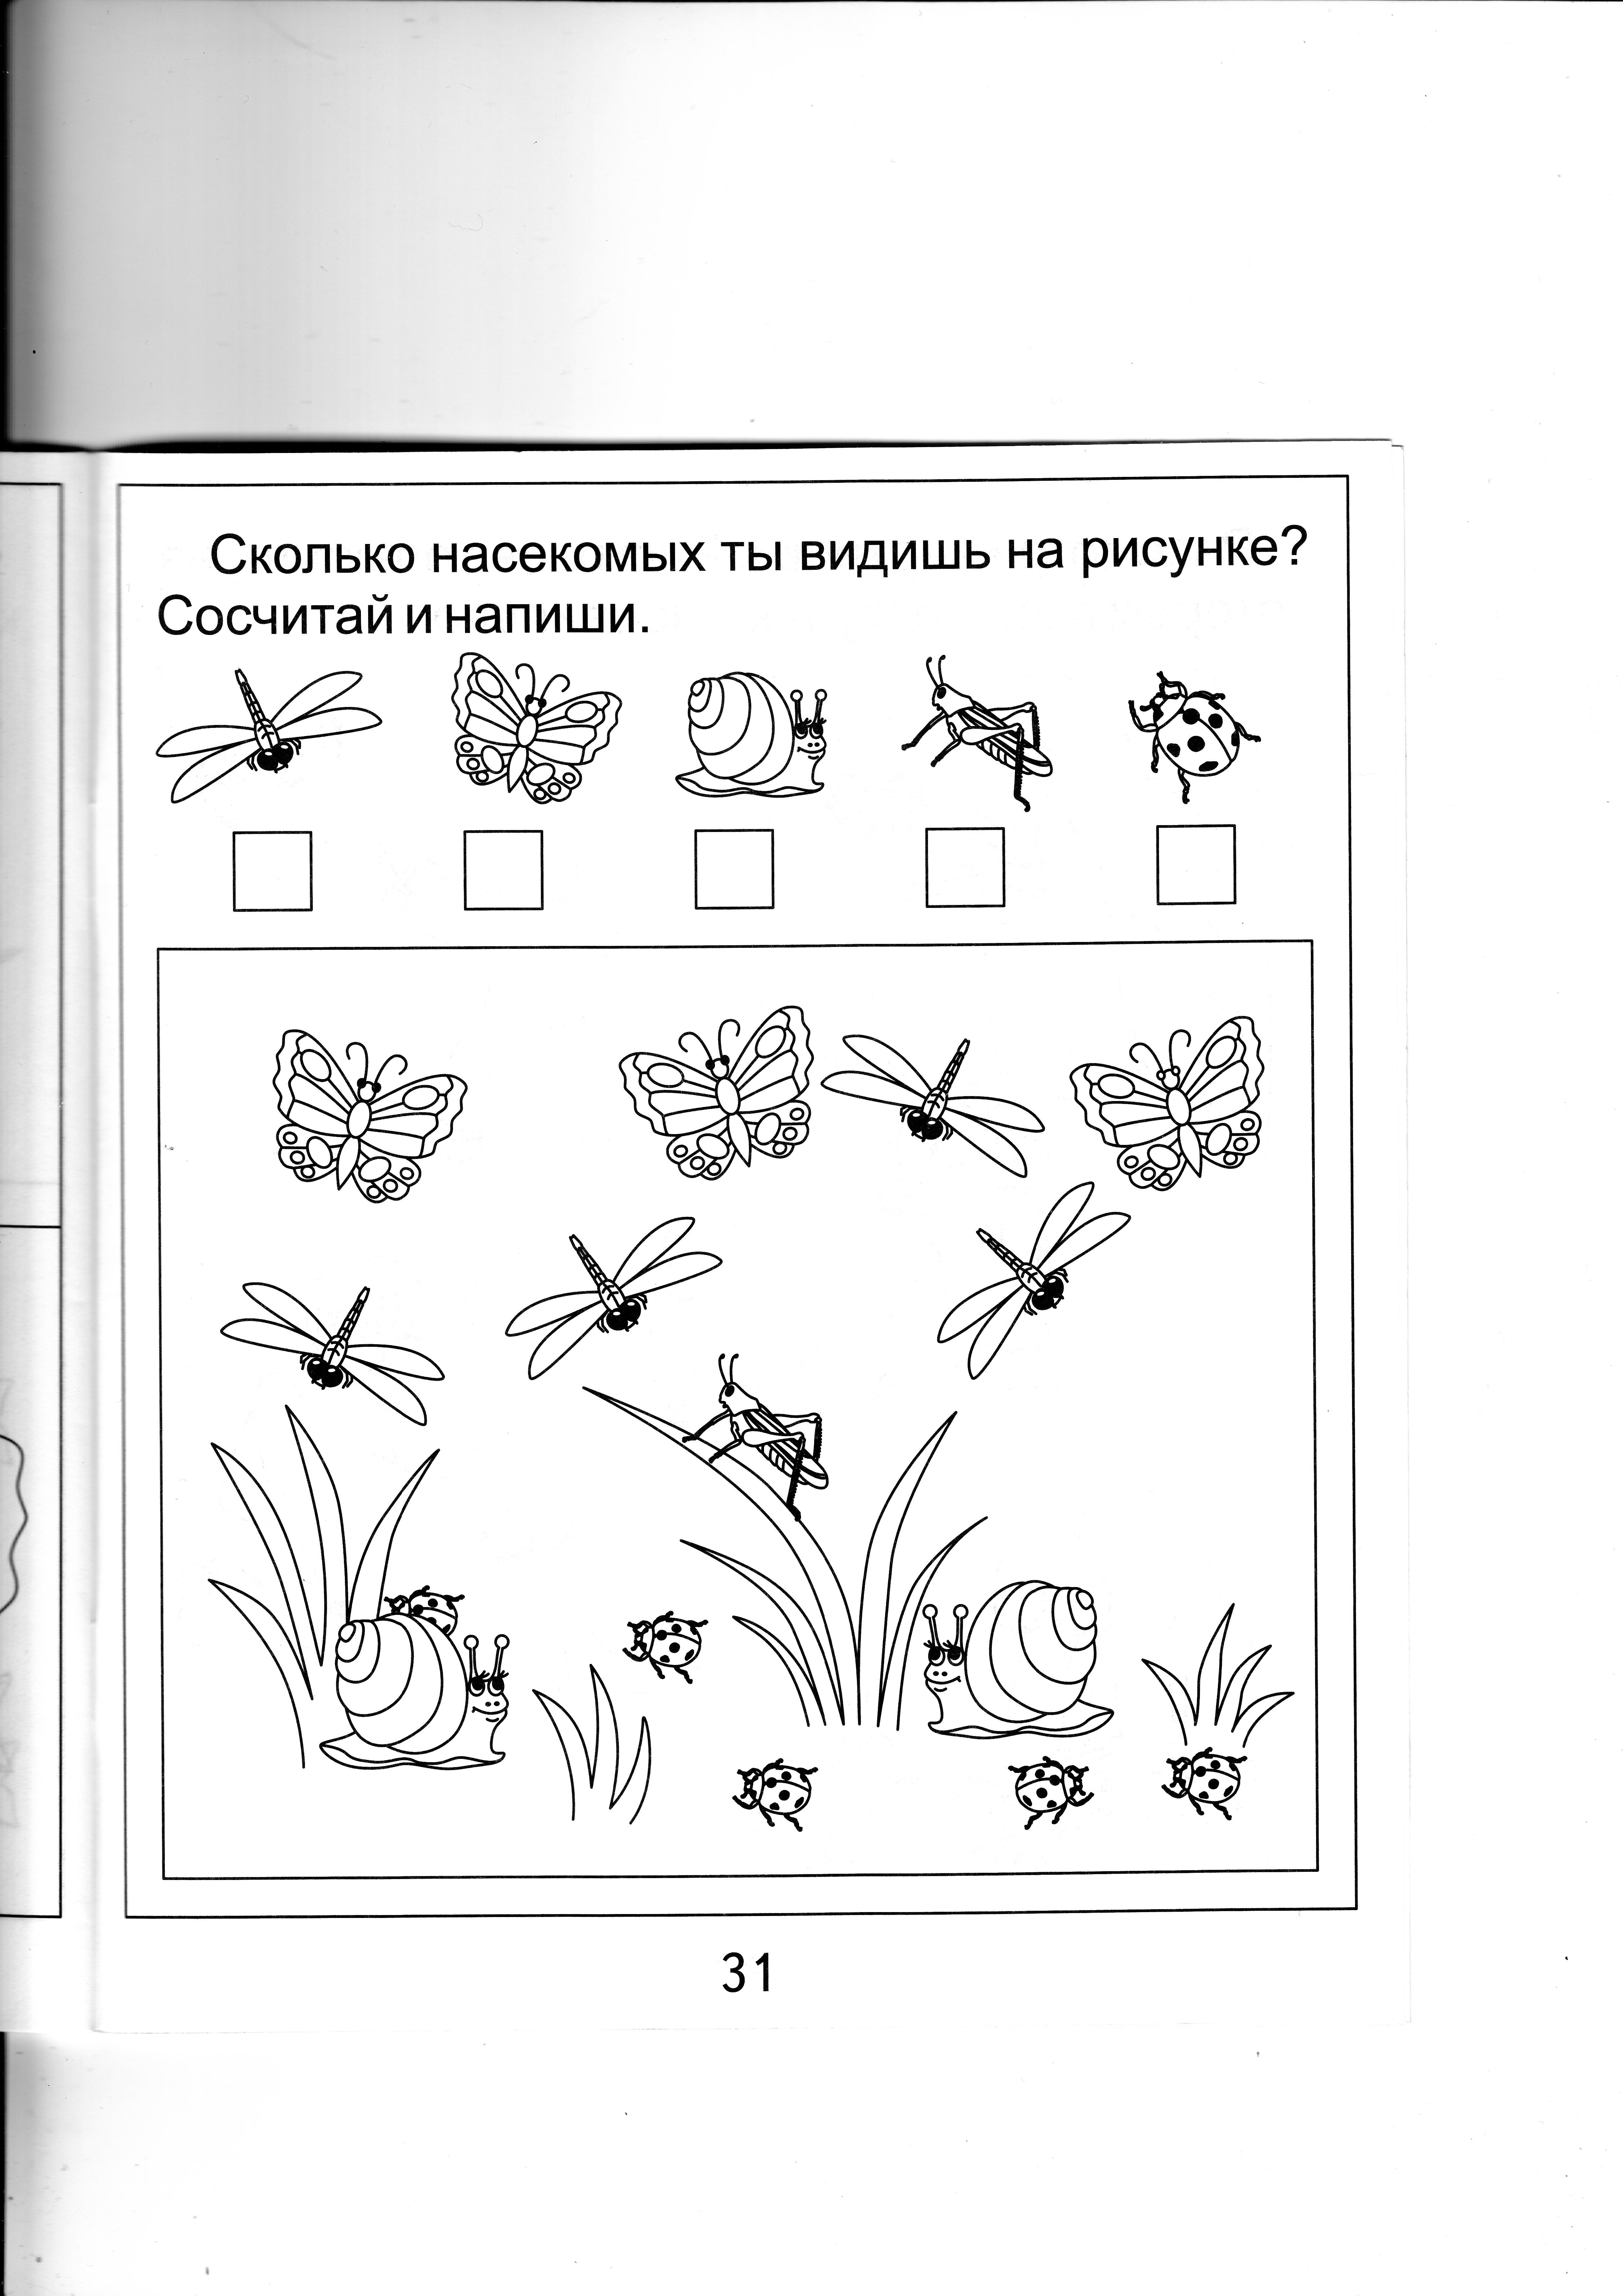 Насекомые урок 1 классе. Сколько насекомых ты видишь на рисунке сосчитай и напиши. Посчитай сколько насекомых. Картинка посчитай сколько насекомых. Сколько насекомых видишь на картинке.